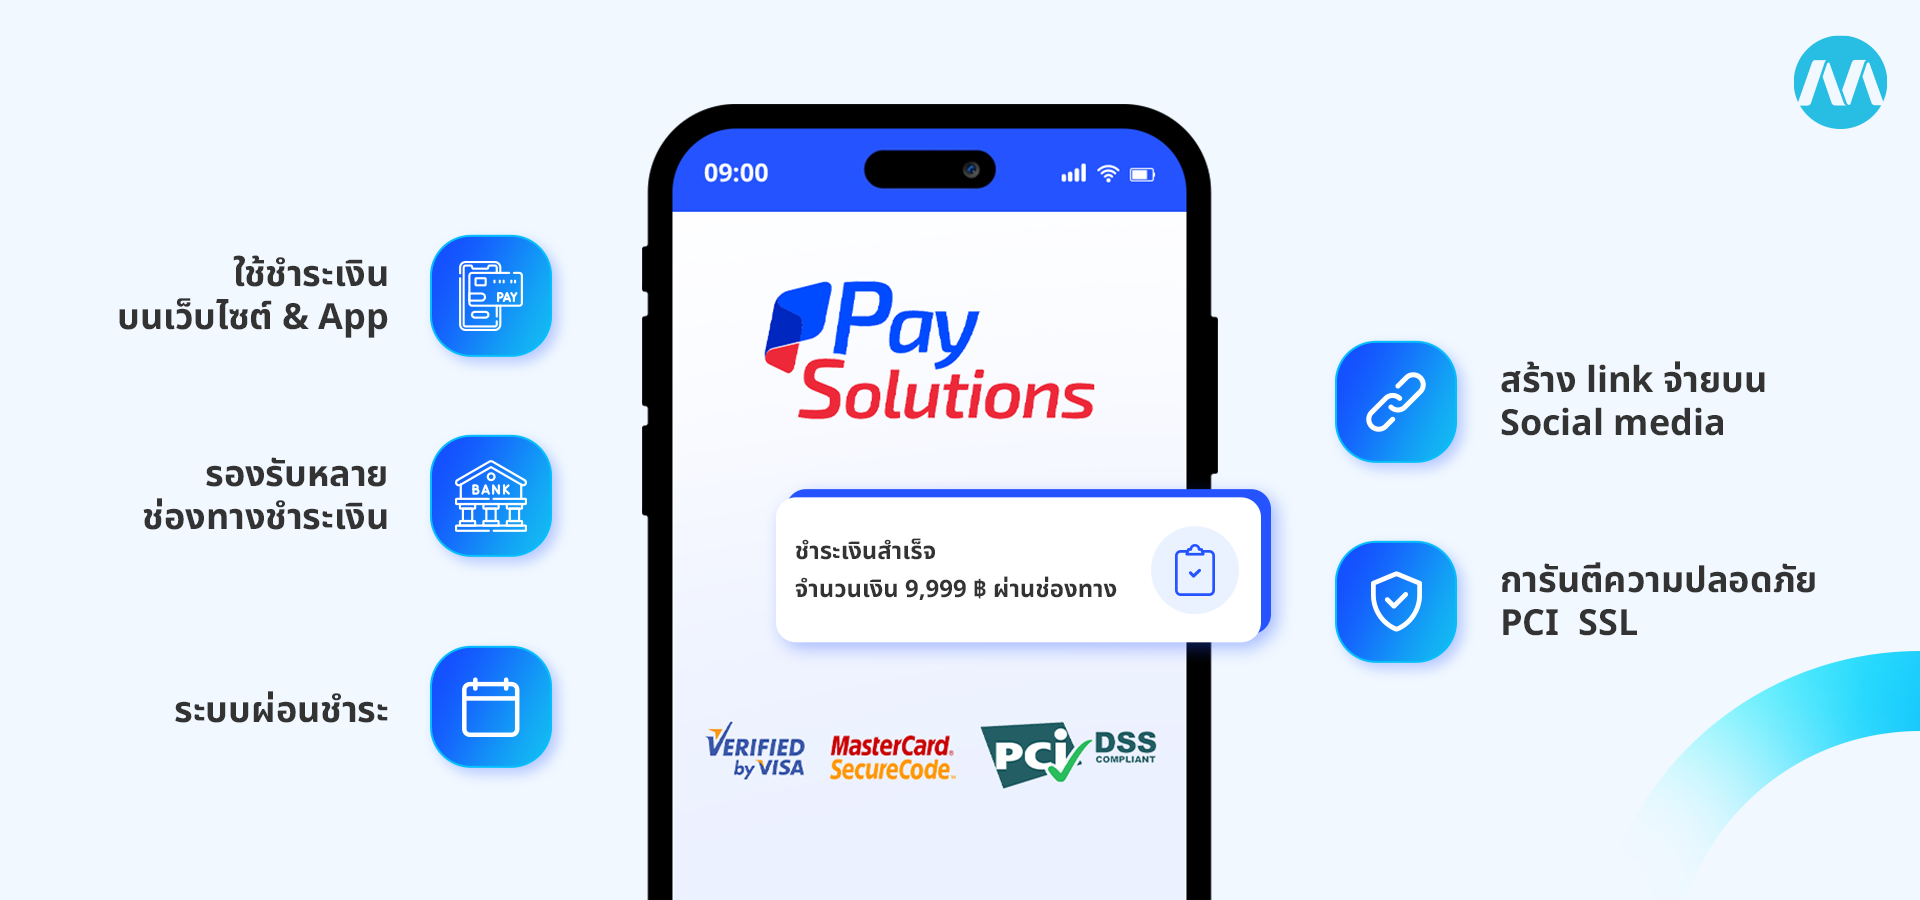 ระบบ Payment Gateway : Pay Solutions 